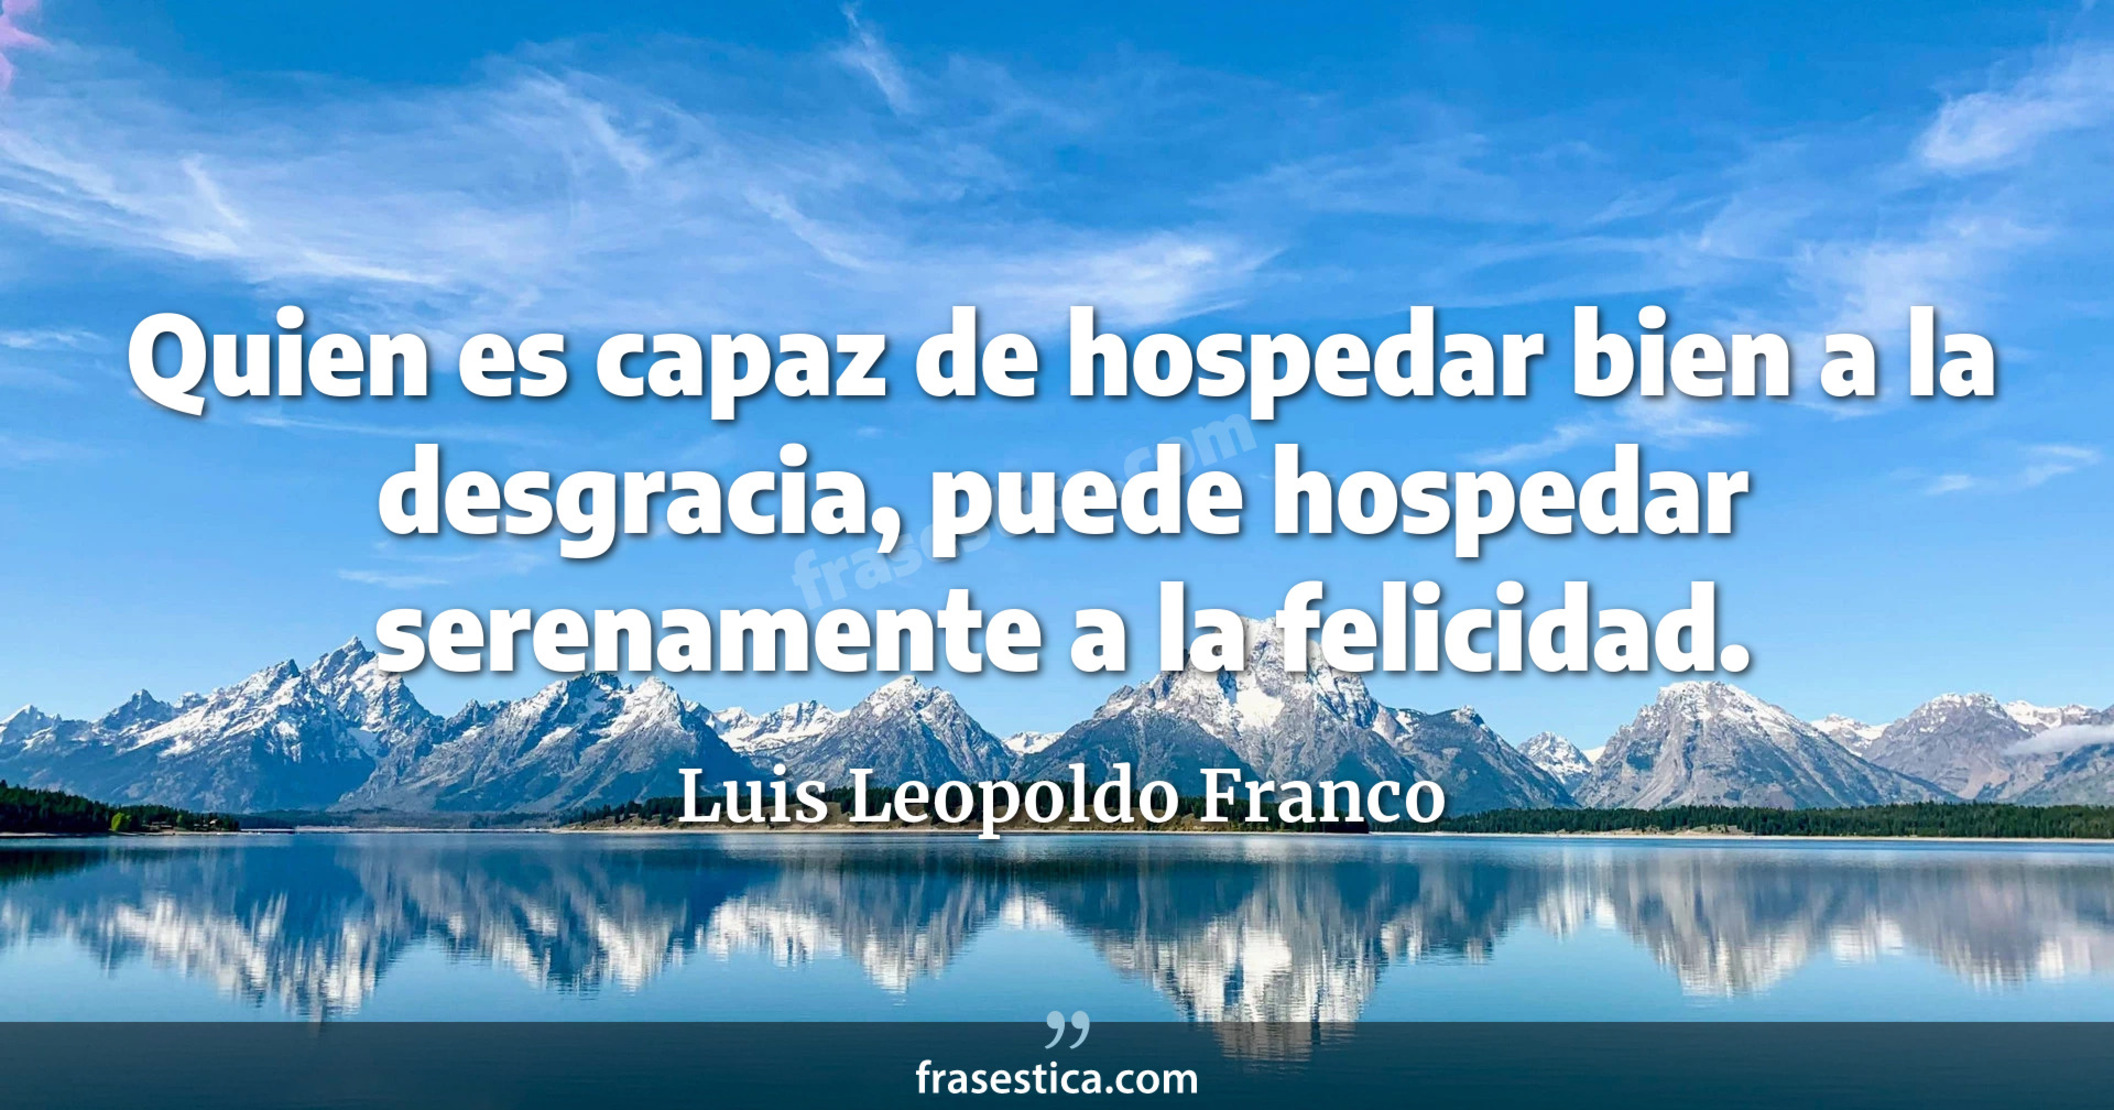 Quien es capaz de hospedar bien a la desgracia, puede hospedar serenamente a la felicidad. - Luis Leopoldo Franco